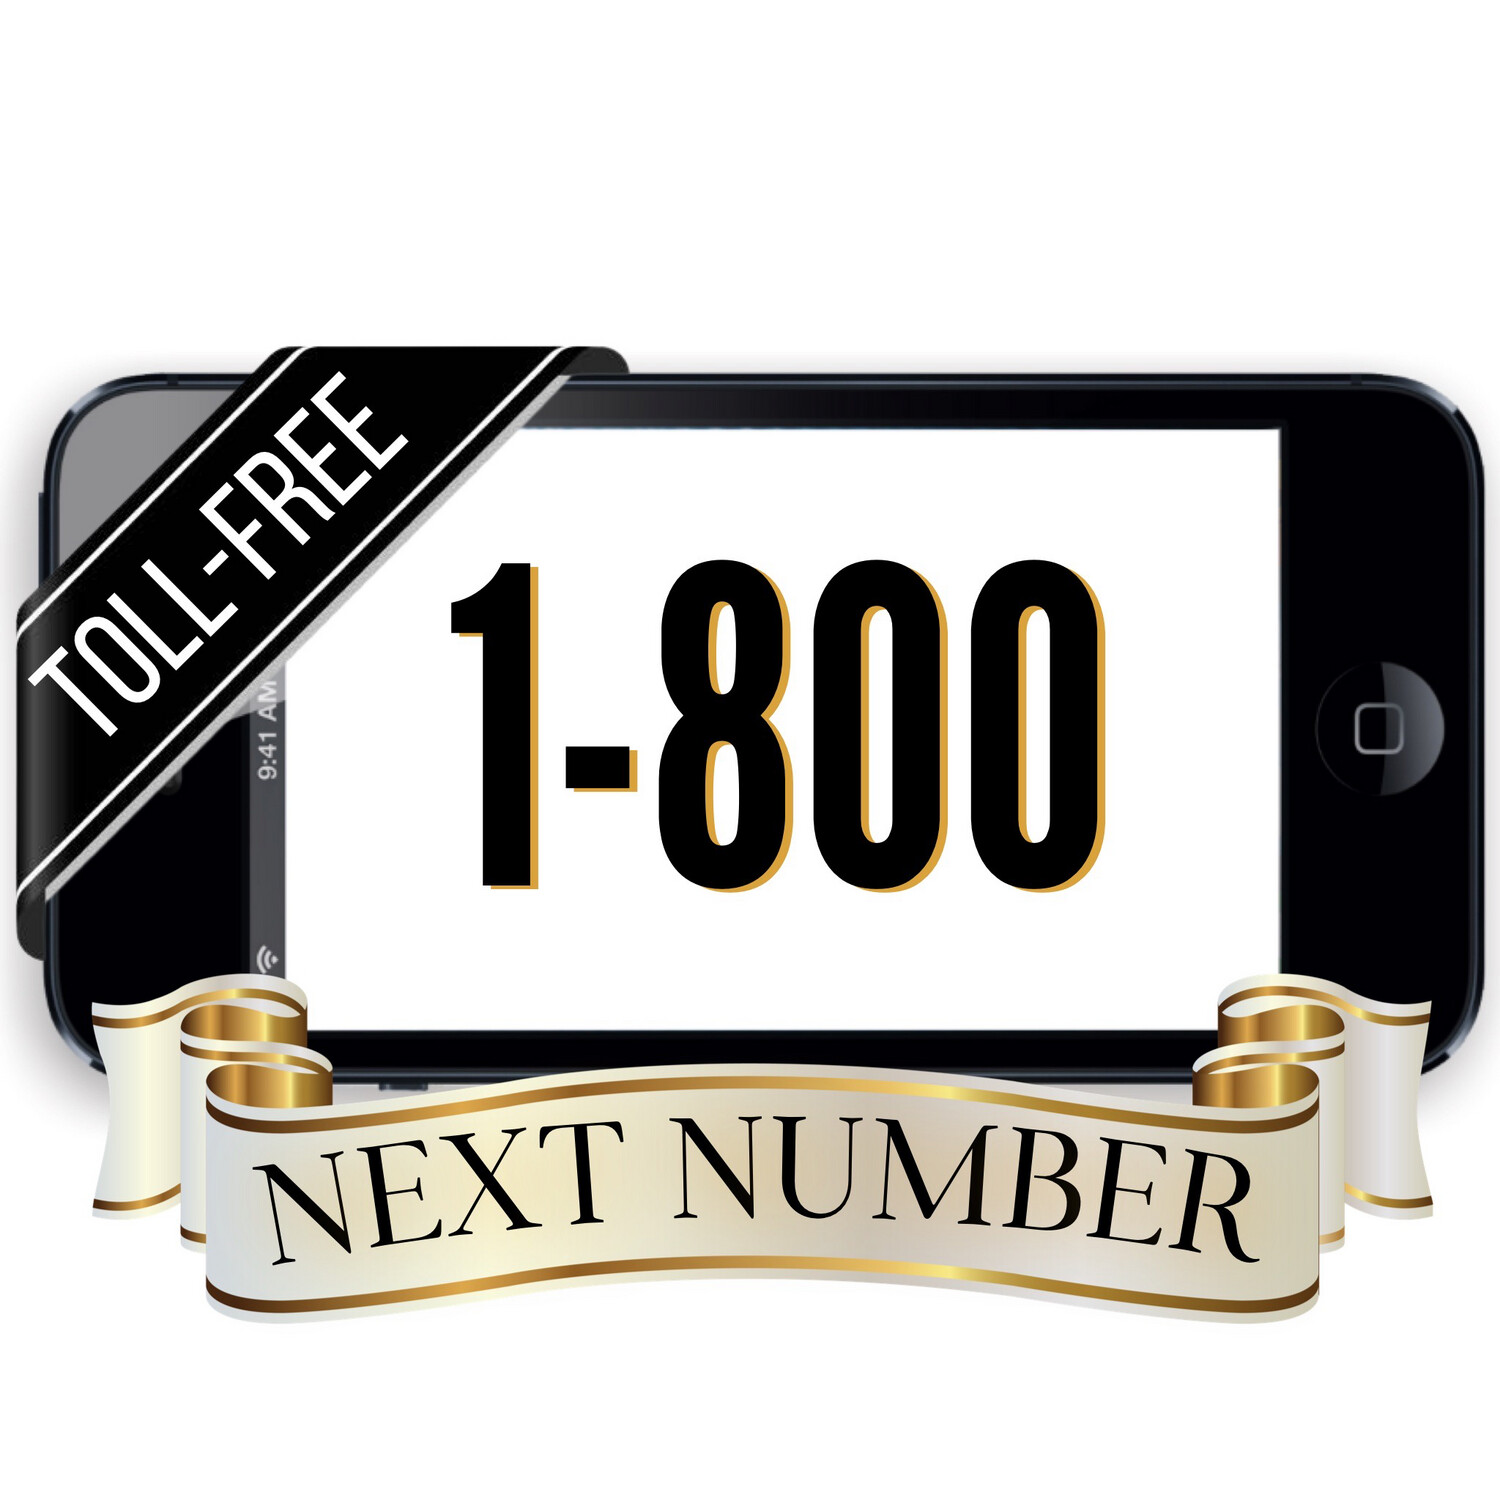 Next 1-800 Number